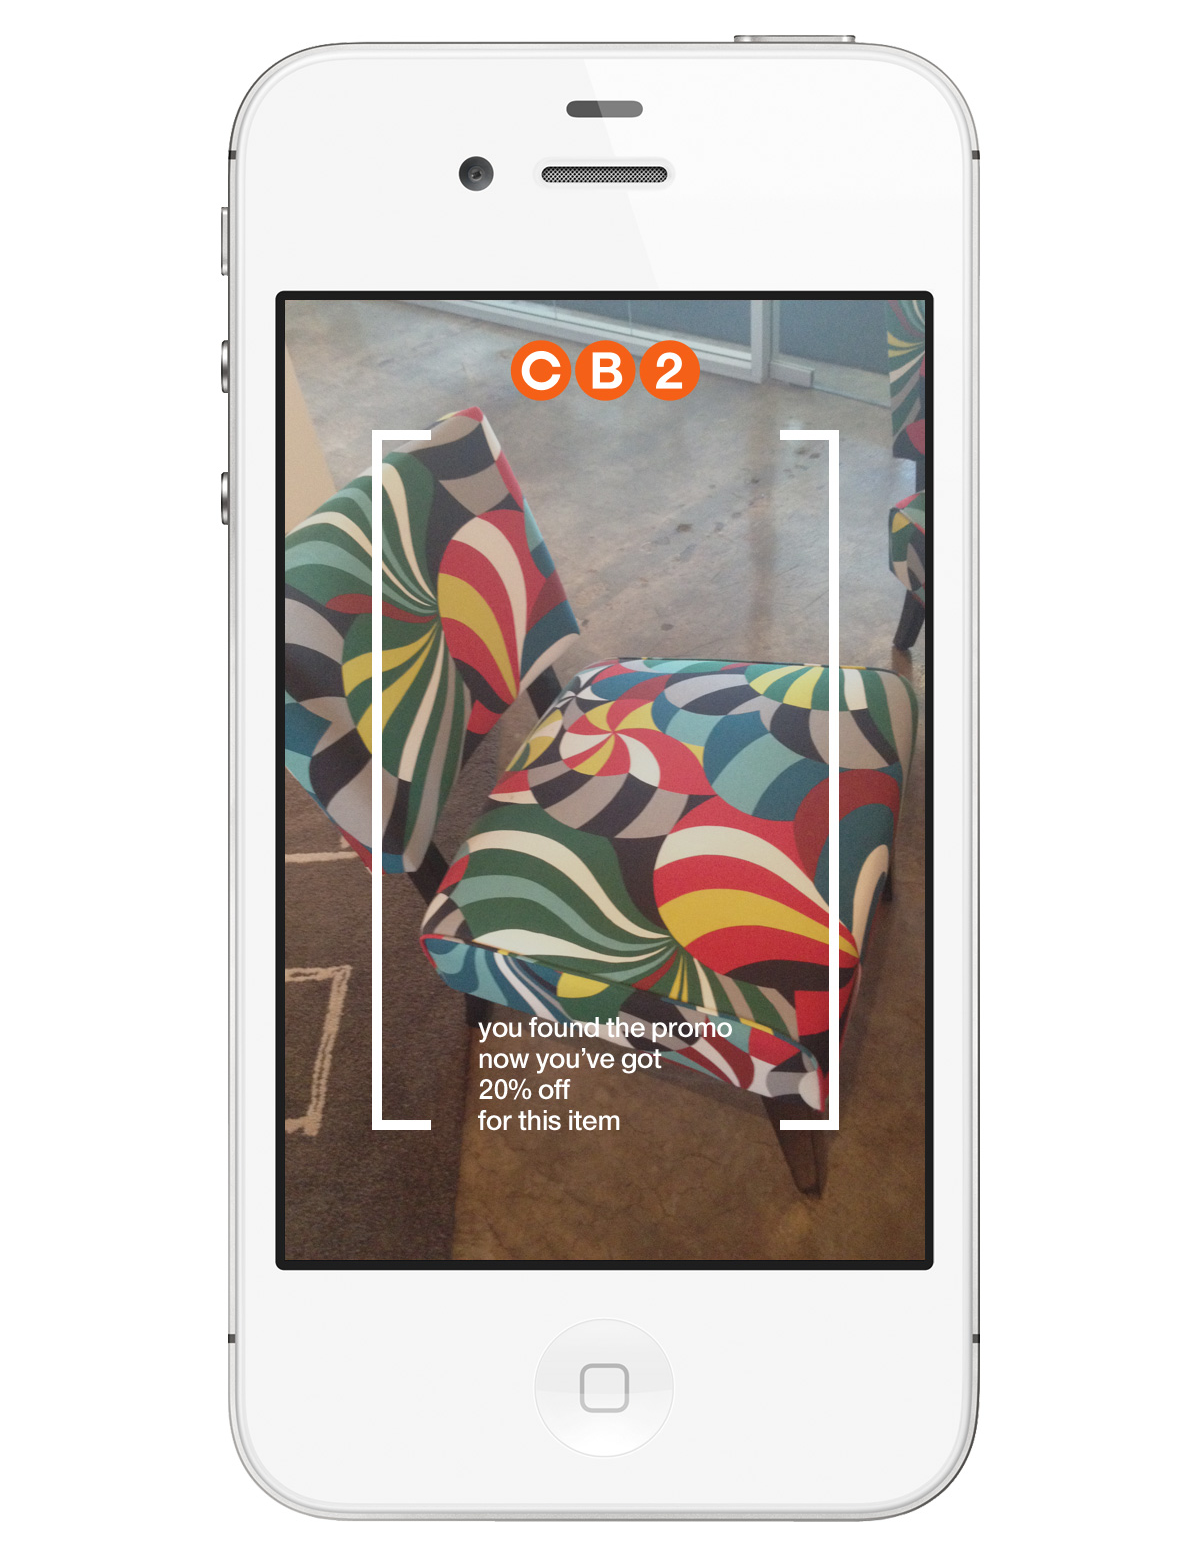 cb2 novogratz furniture posters marketing   modern affordable sweeptake bold colorful app concept